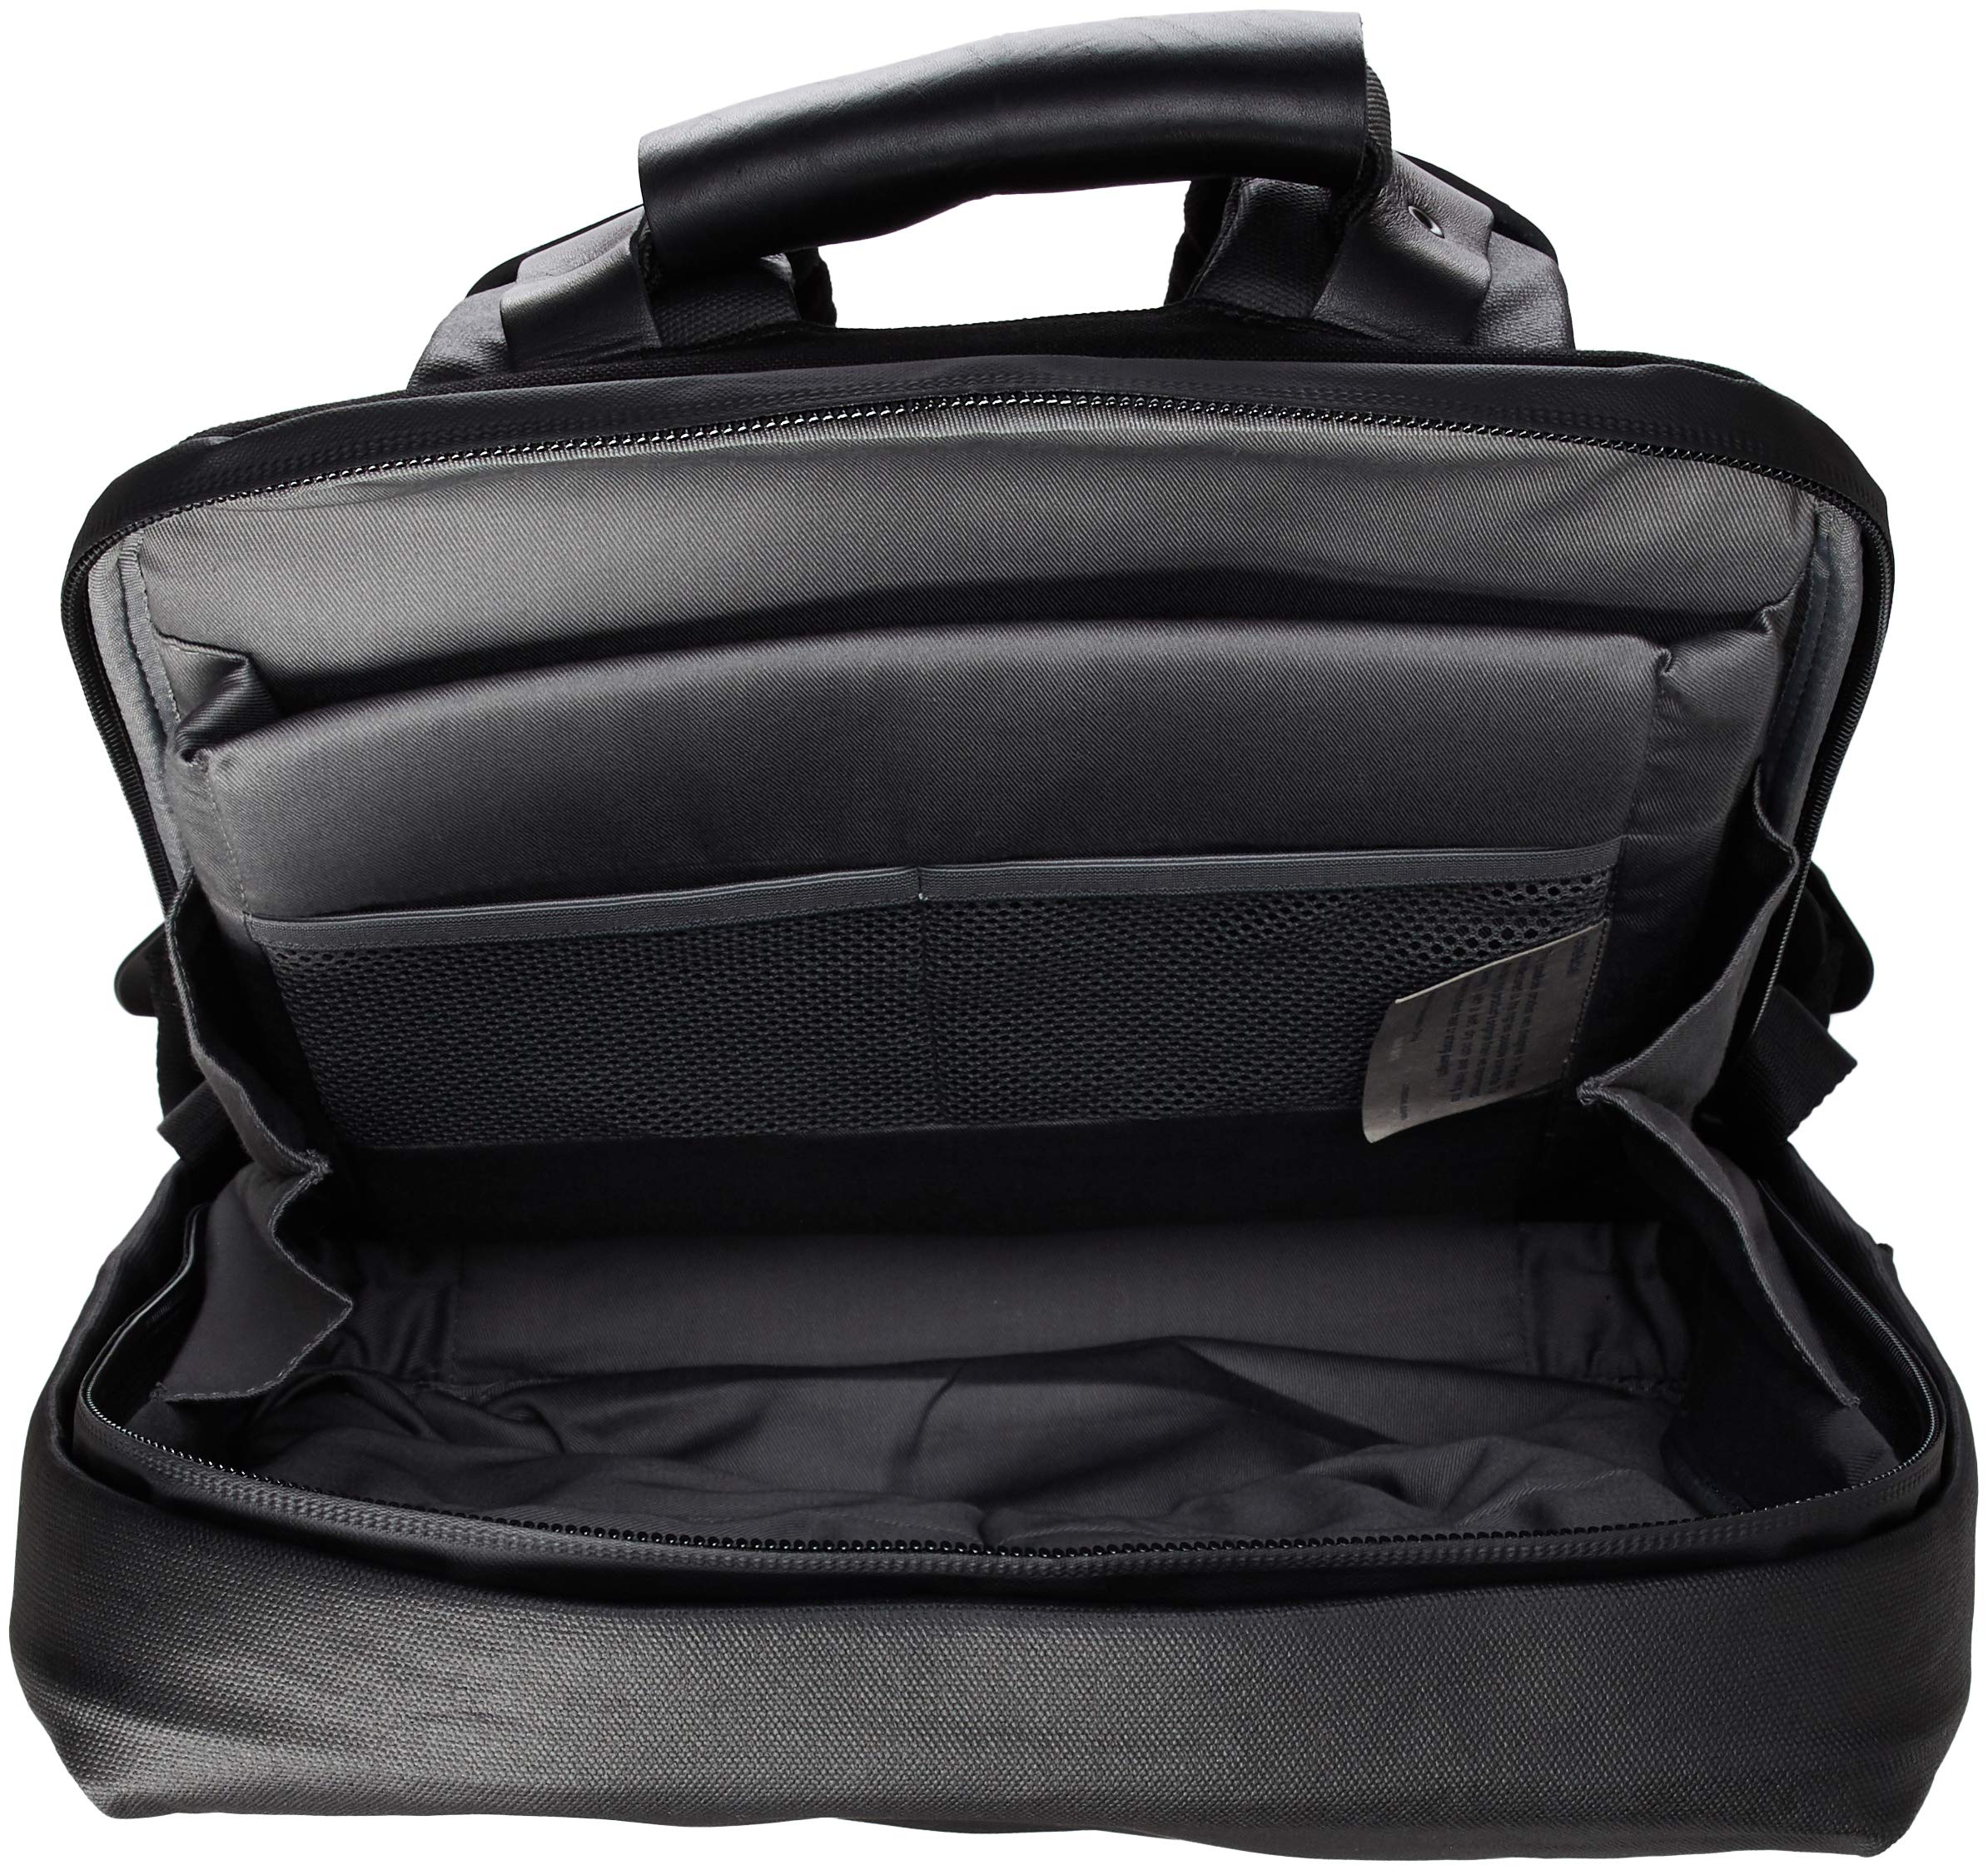 Cote&Ciel(コート&シエル) Men's CC-28332 Backpack, Black, One Size